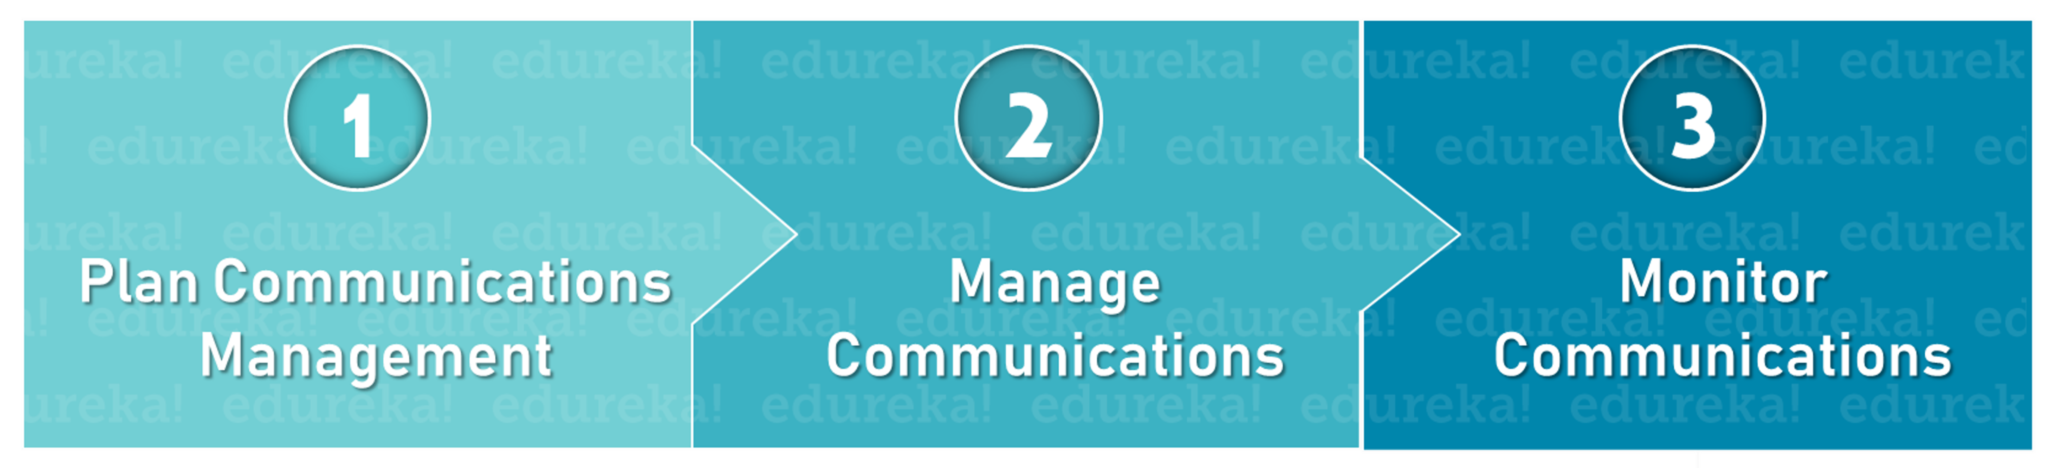 CM processes - Project Communication Management - Edureka